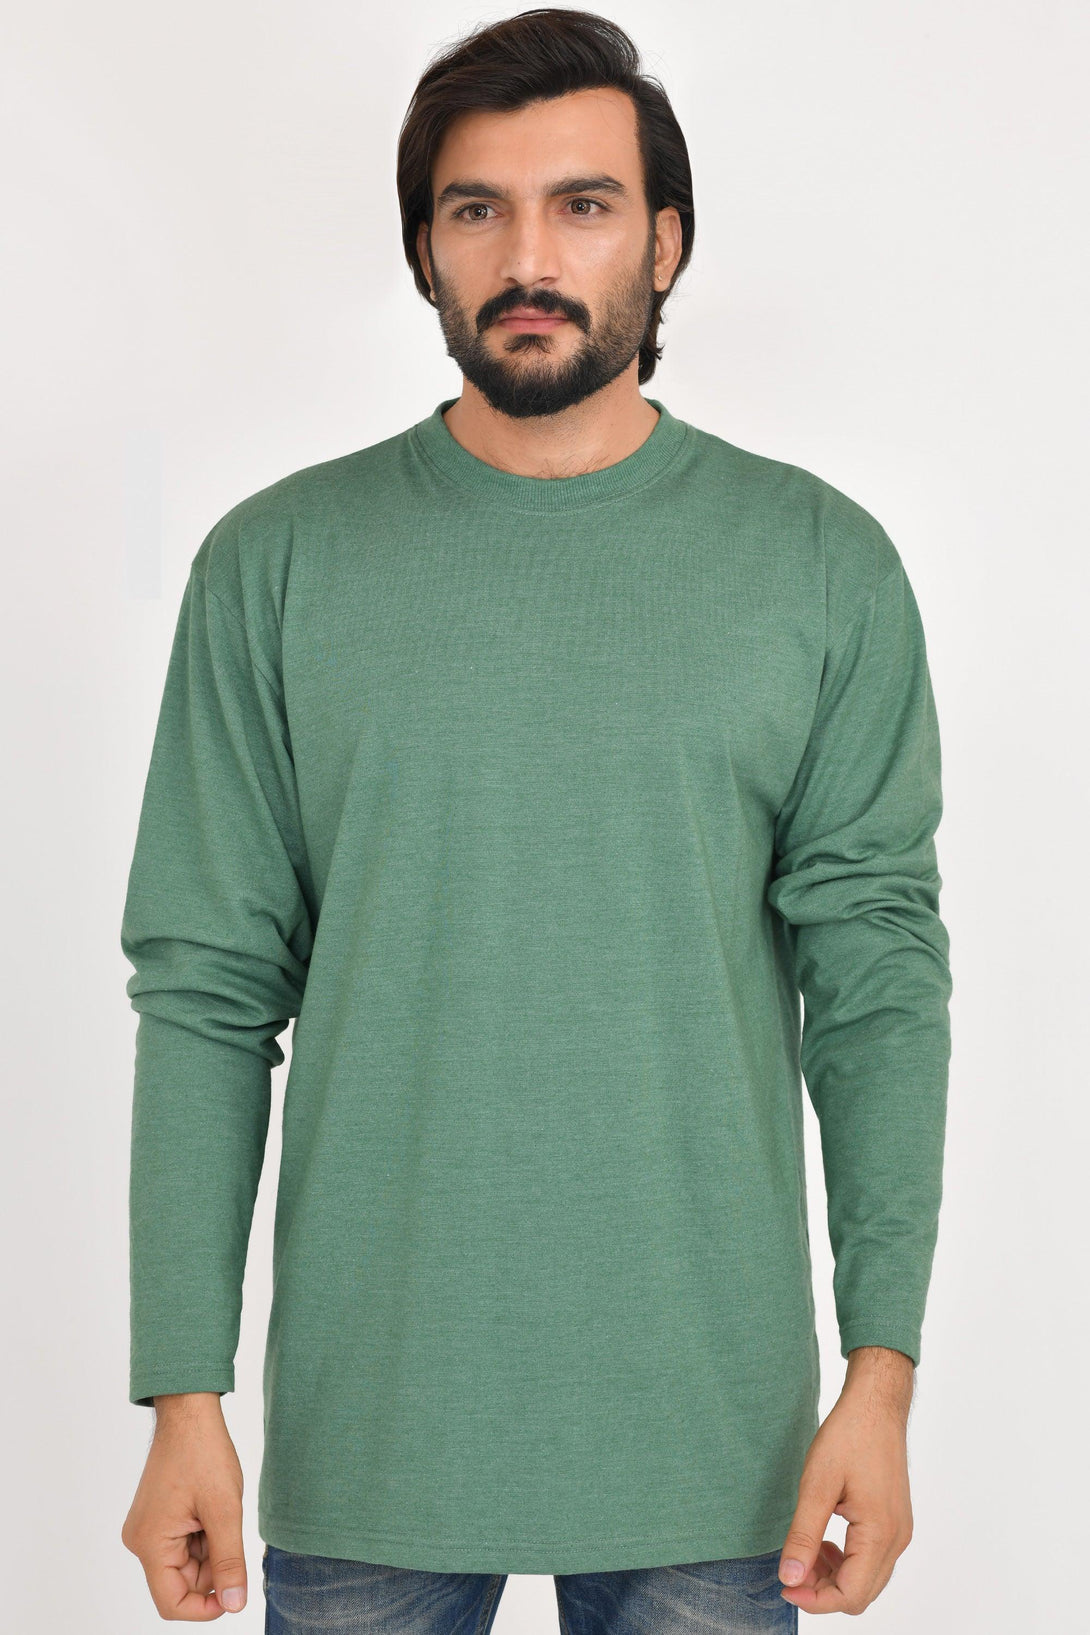 Long & Tall Full Sleeves Shirts | Pack of 3 | Stone - Green Melange - Navy Melange - FTS